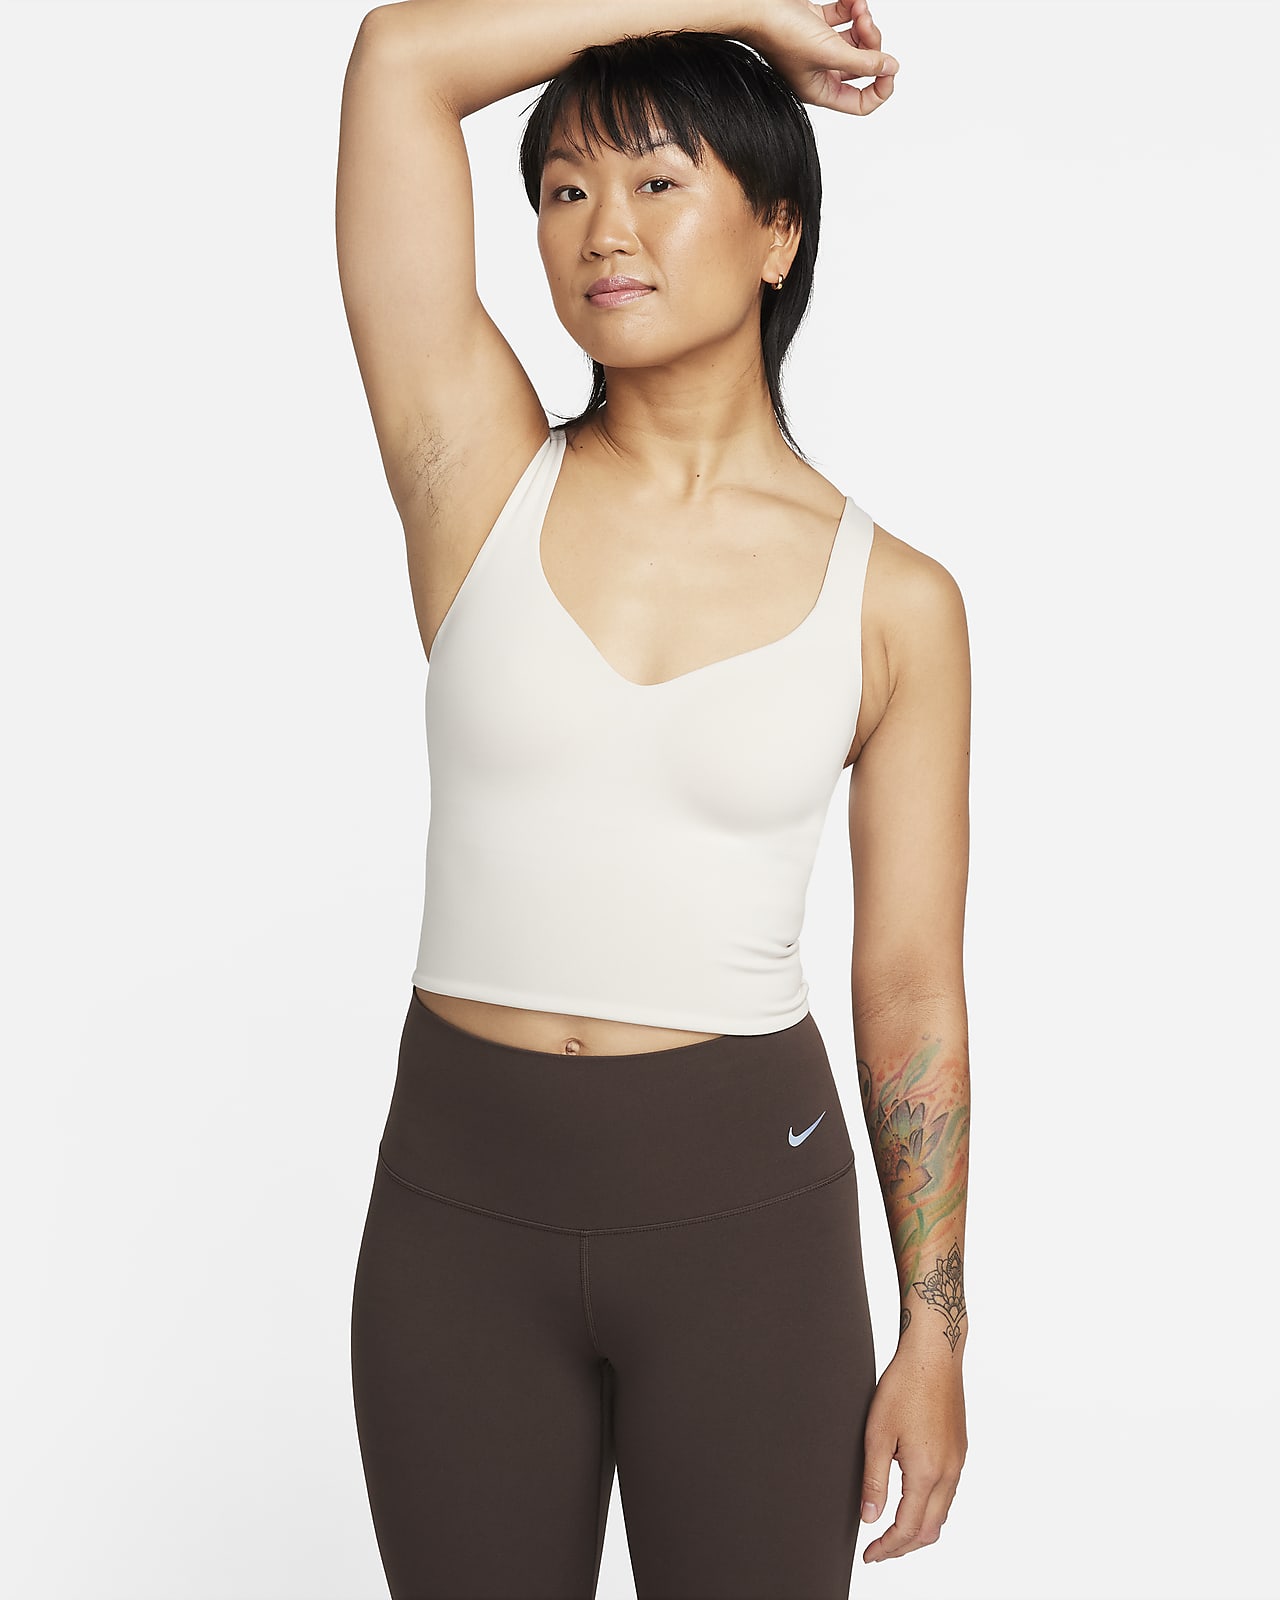 Camisola sem mangas com sutiã de desporto almofadado de suporte médio Nike Alate para mulher